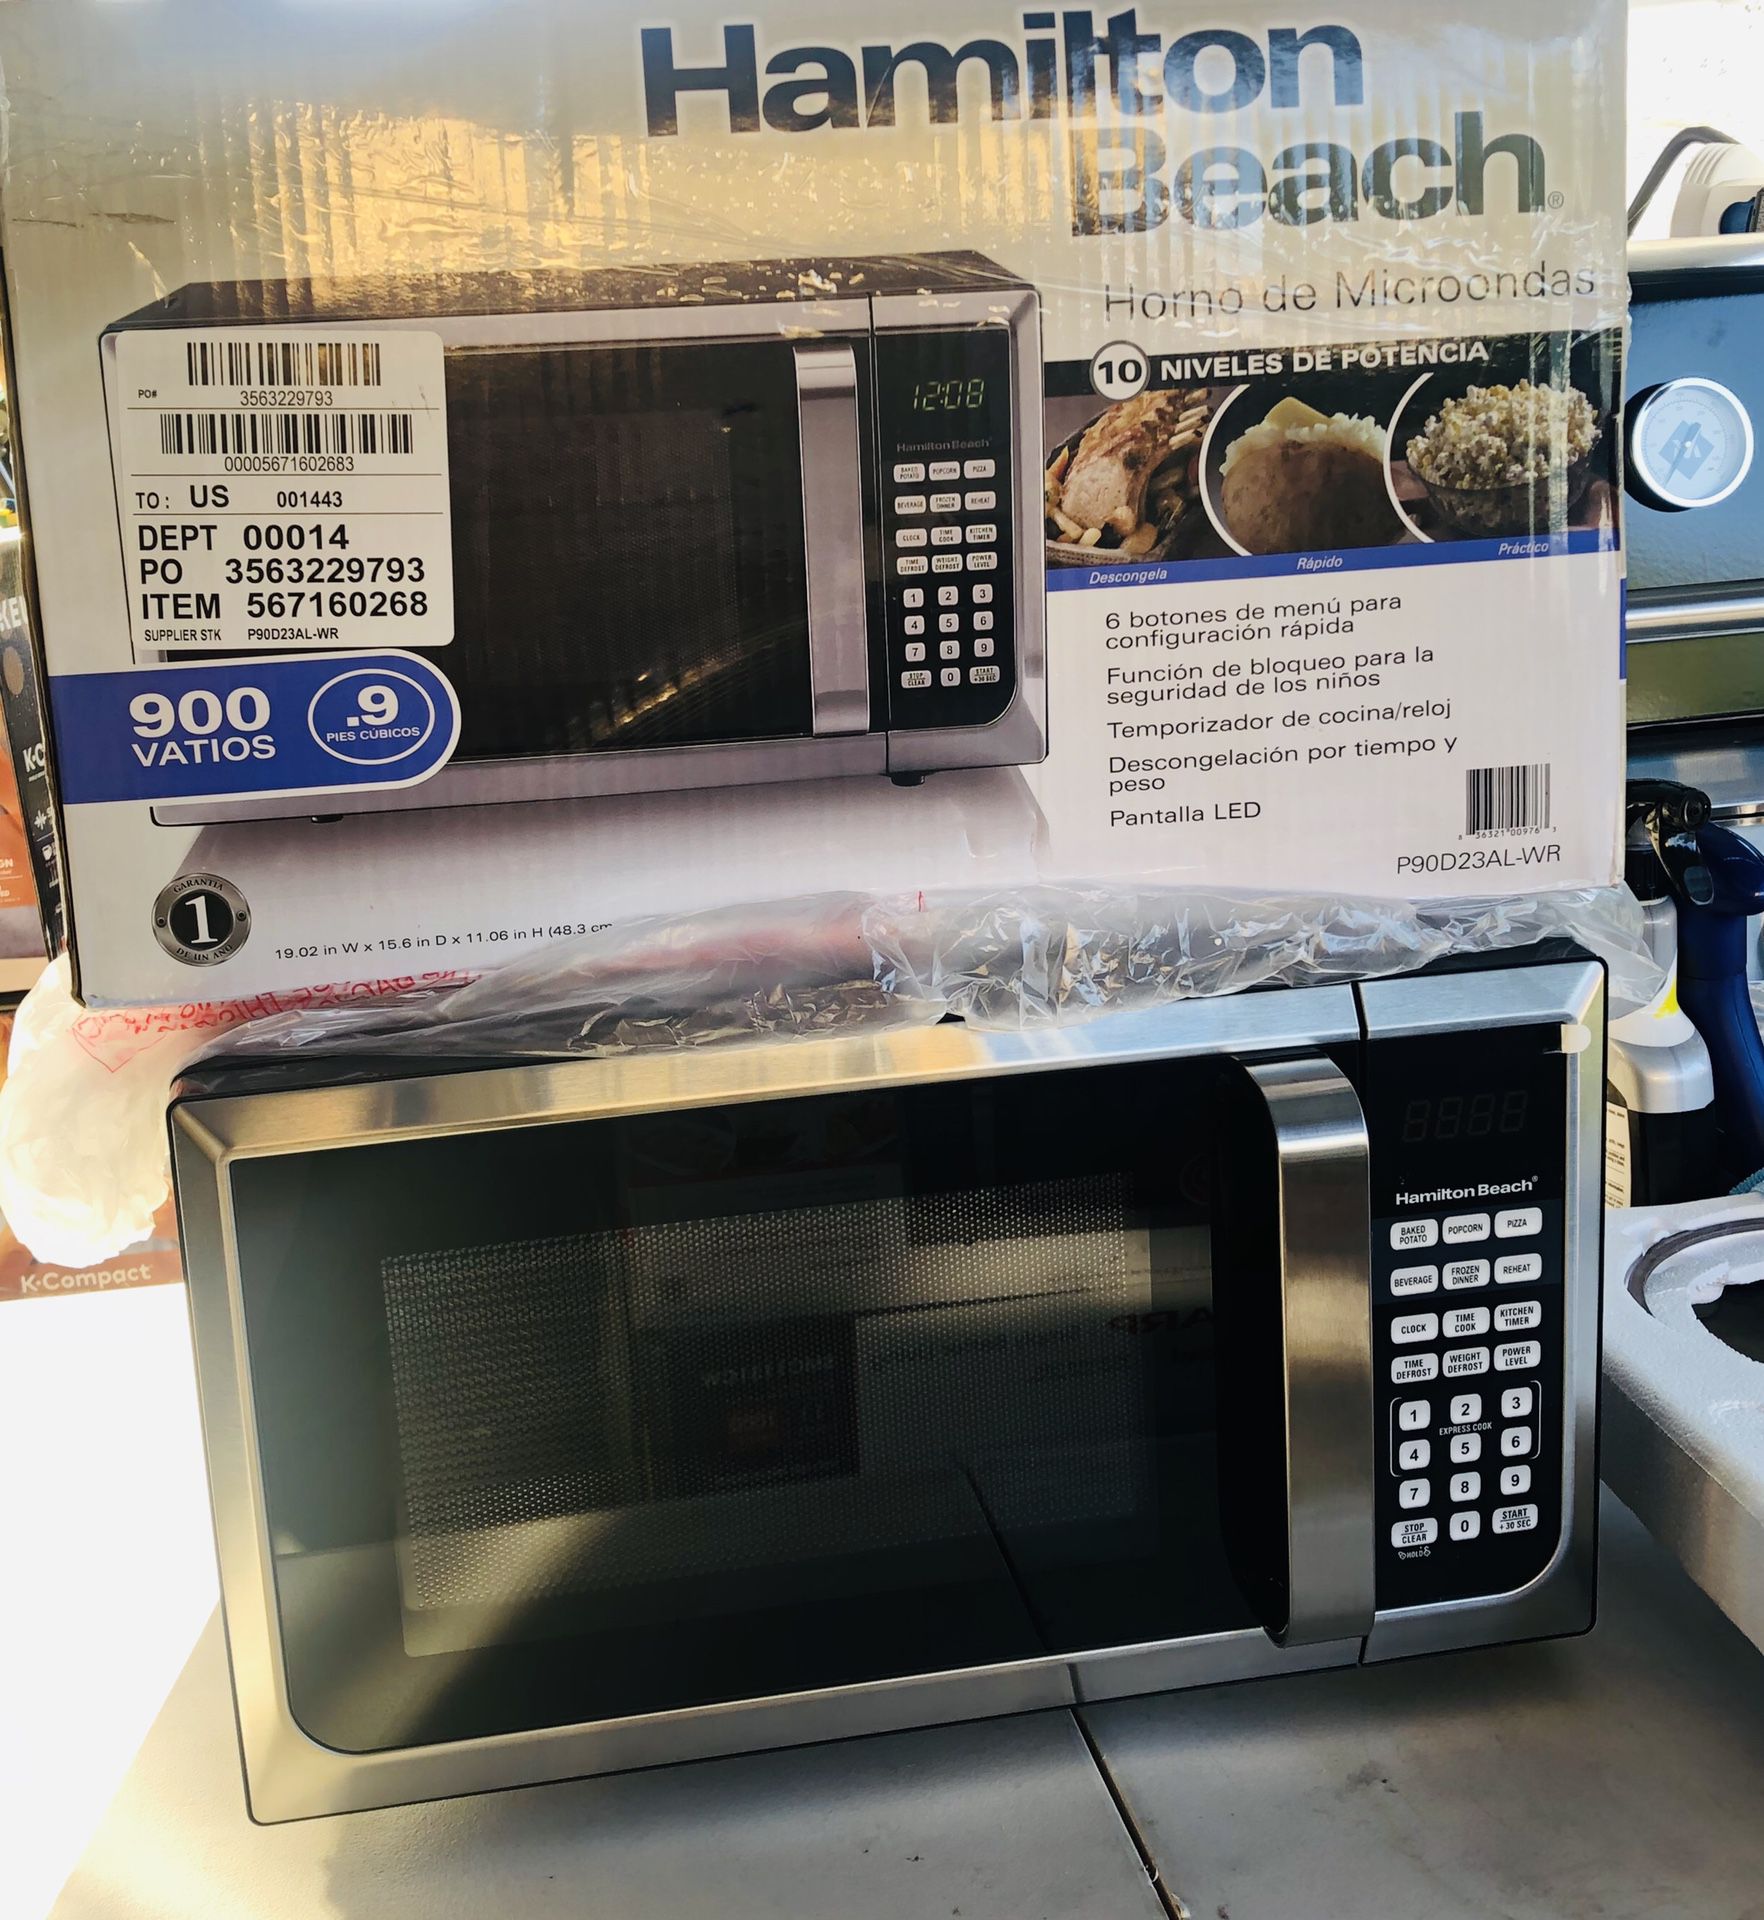 Hamilton beach microwave oven